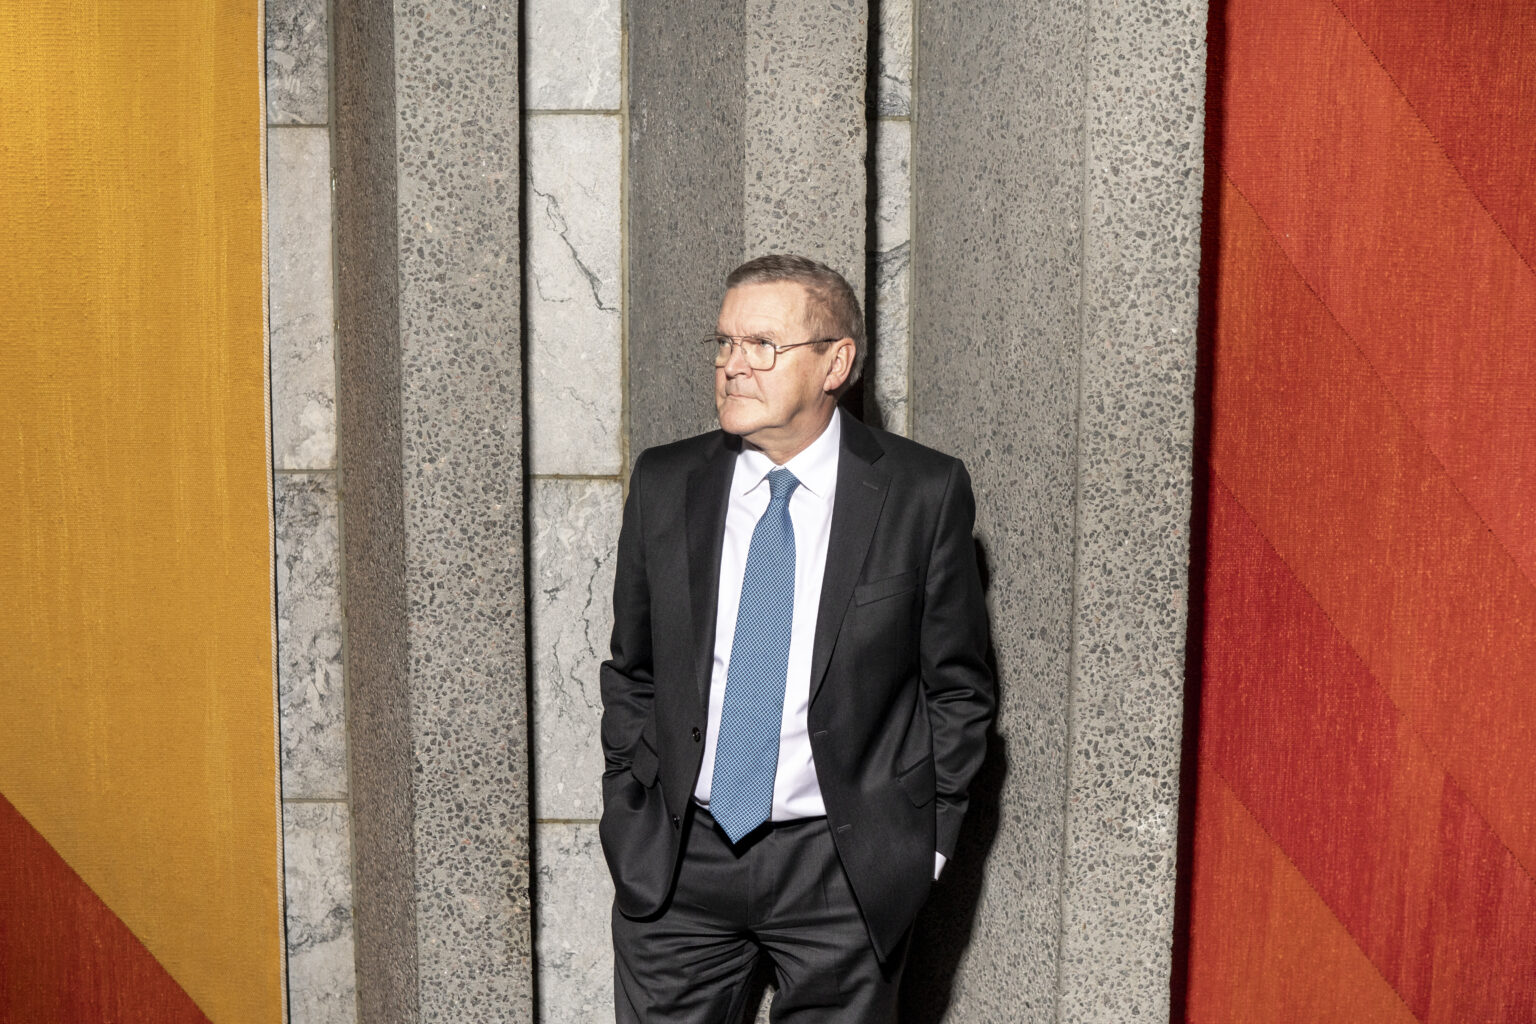 Hvornår holder Nationalbank-direktør Lars Rohde sin afskedsreception?